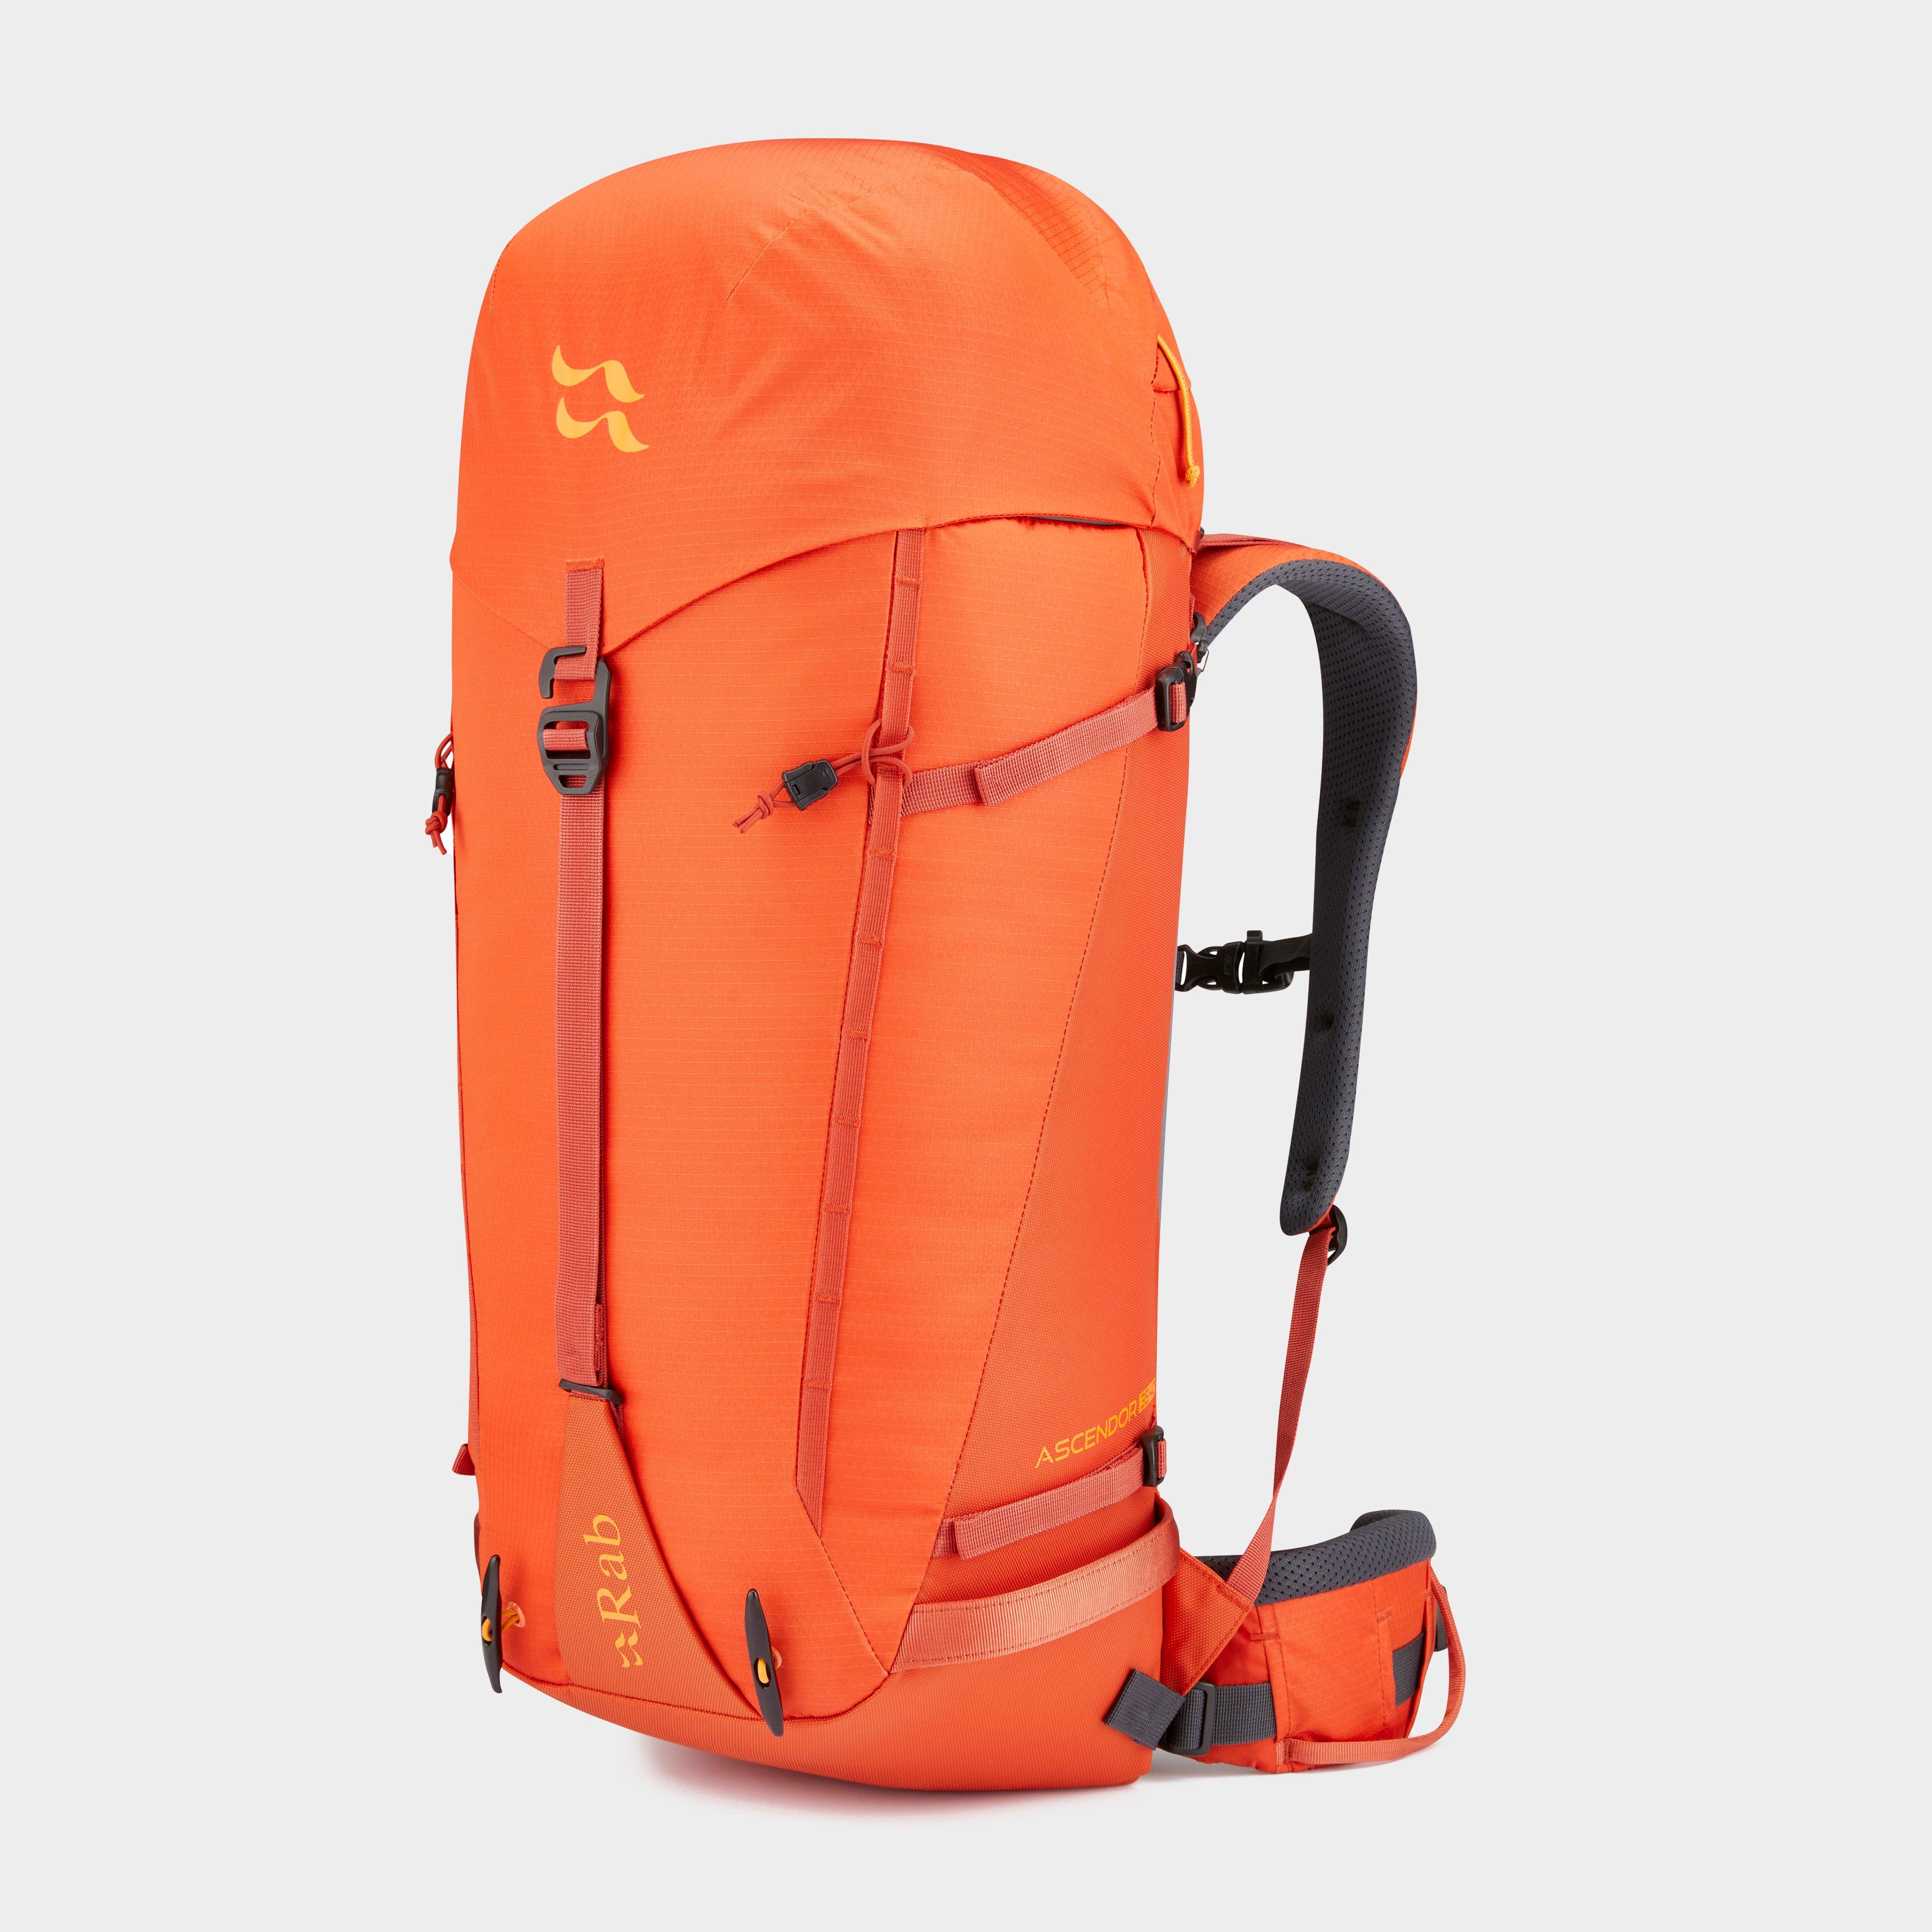 Rab Ascendor 35:40 Mountain Pack - Orange/orange  Orange/orange